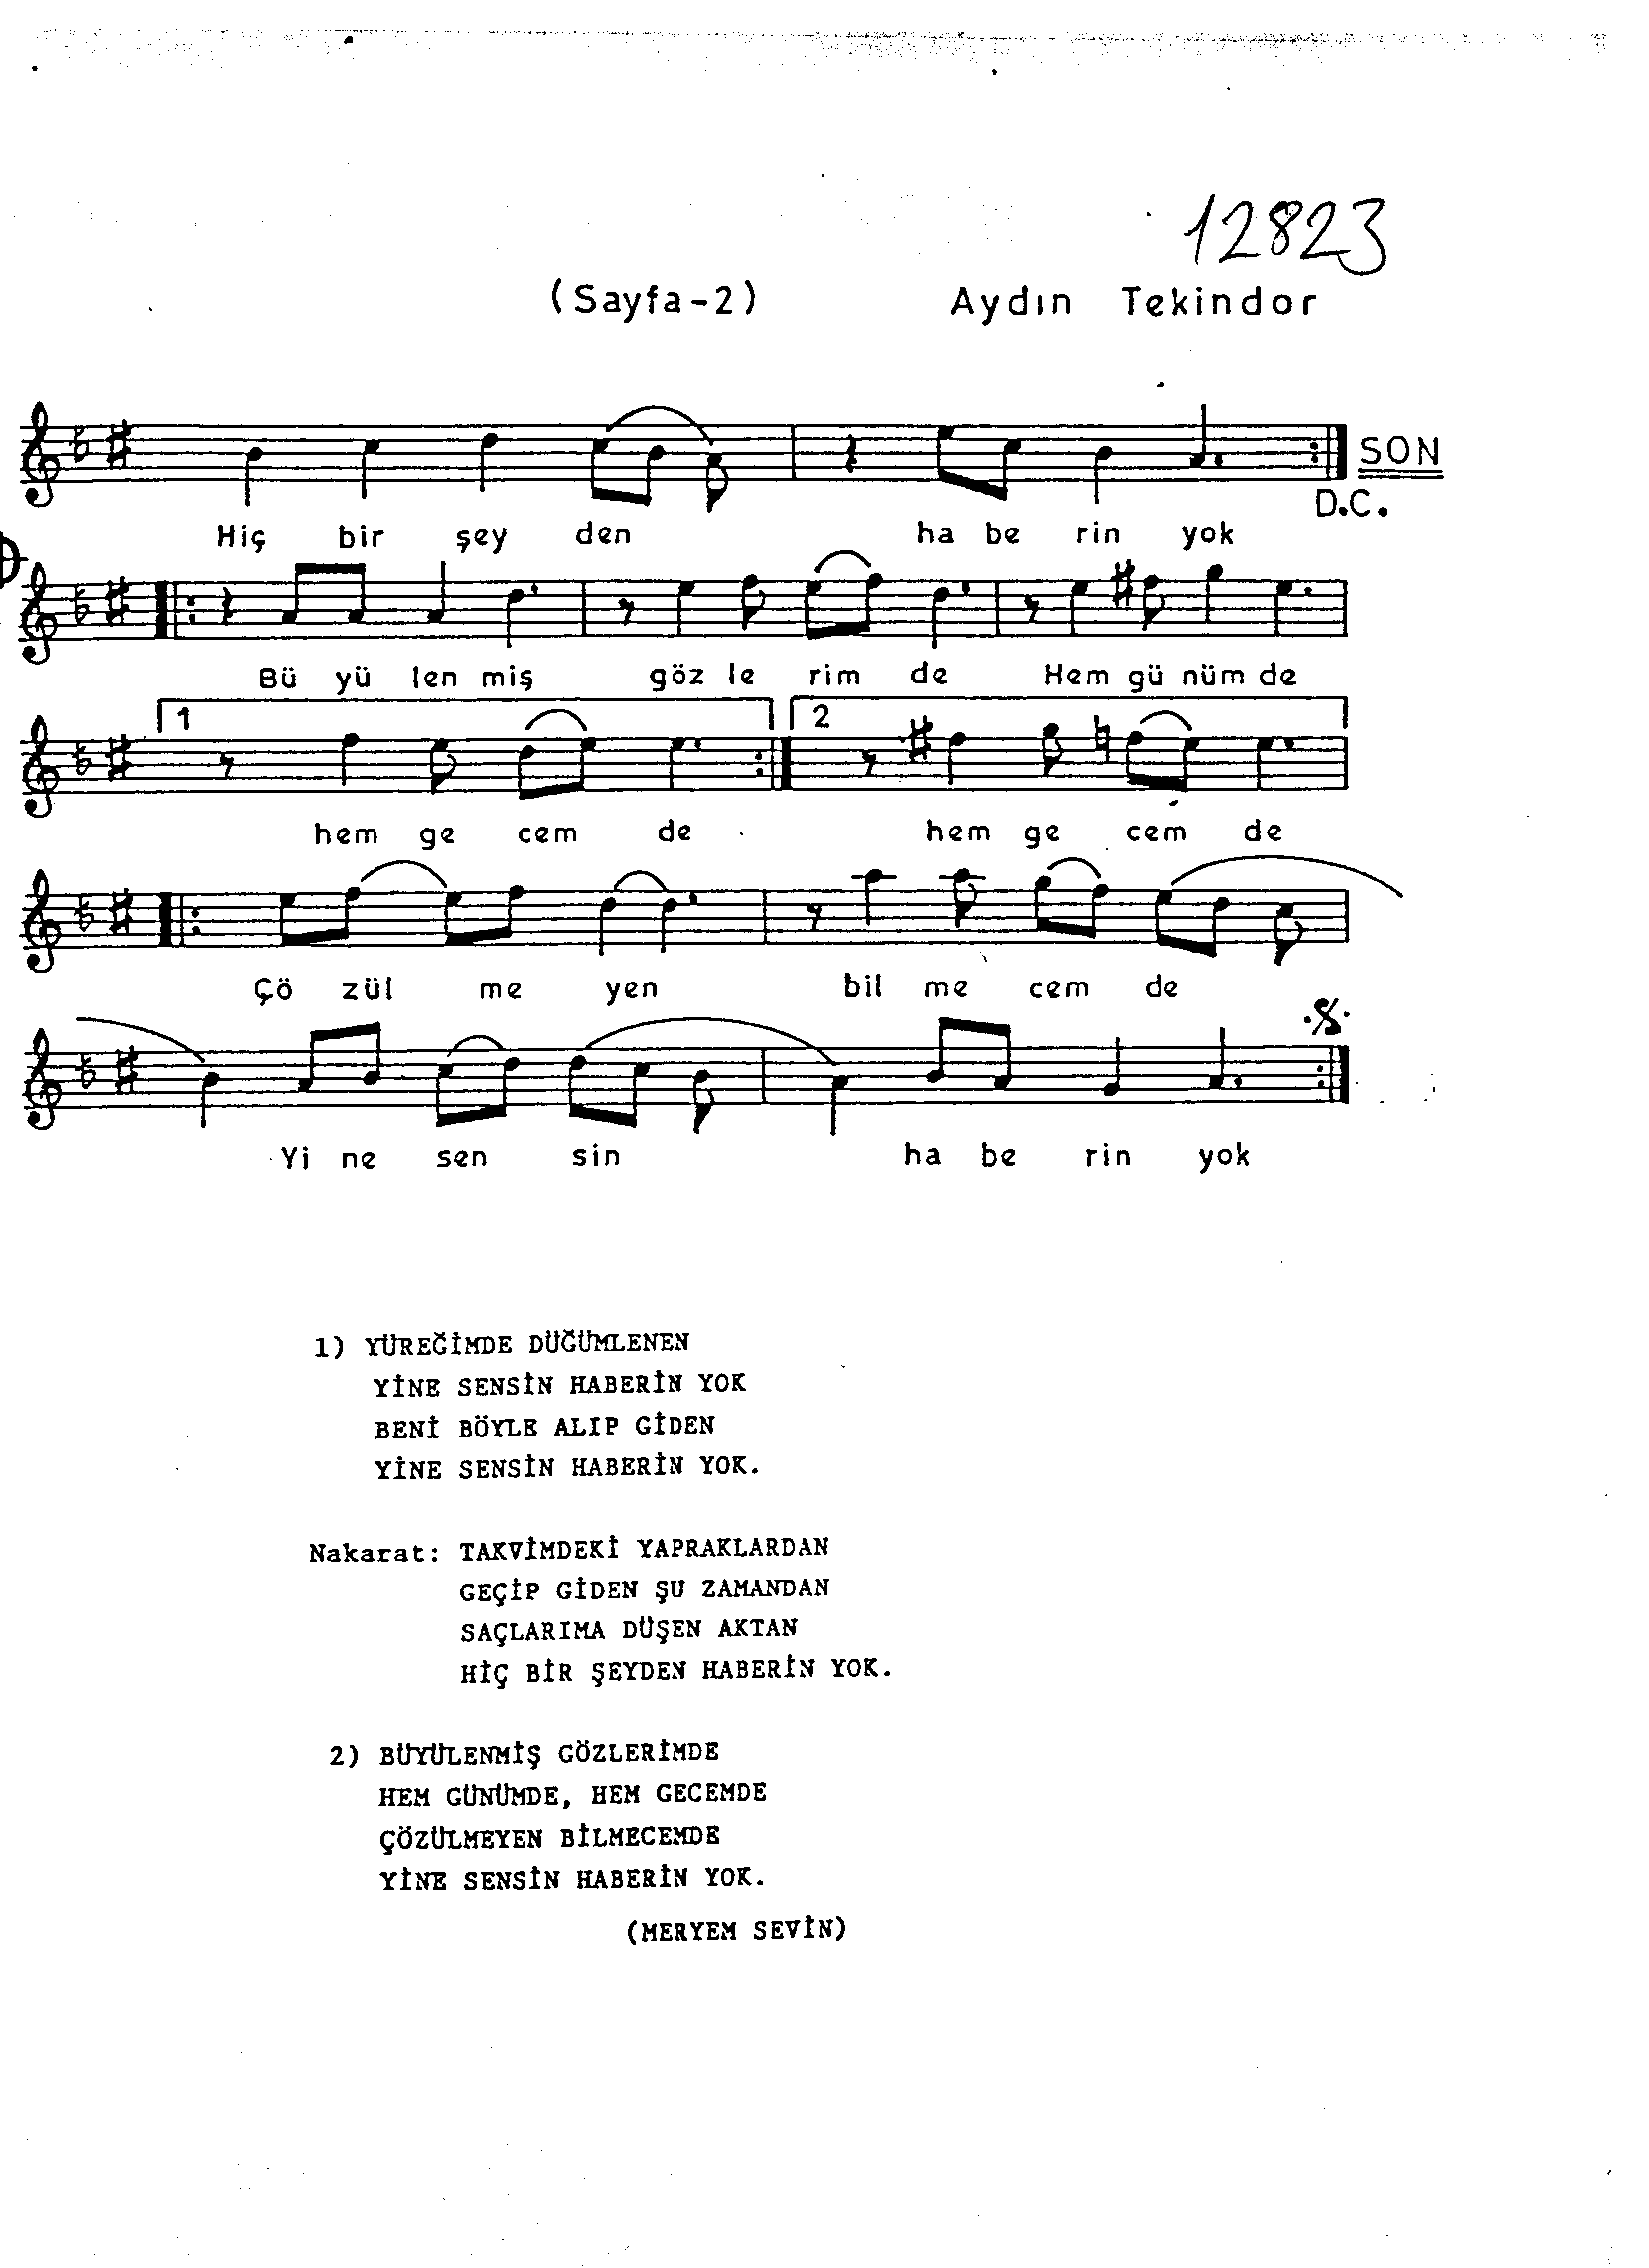 Hicâz - Şarkı - Aydın Tekindor - Sayfa 2